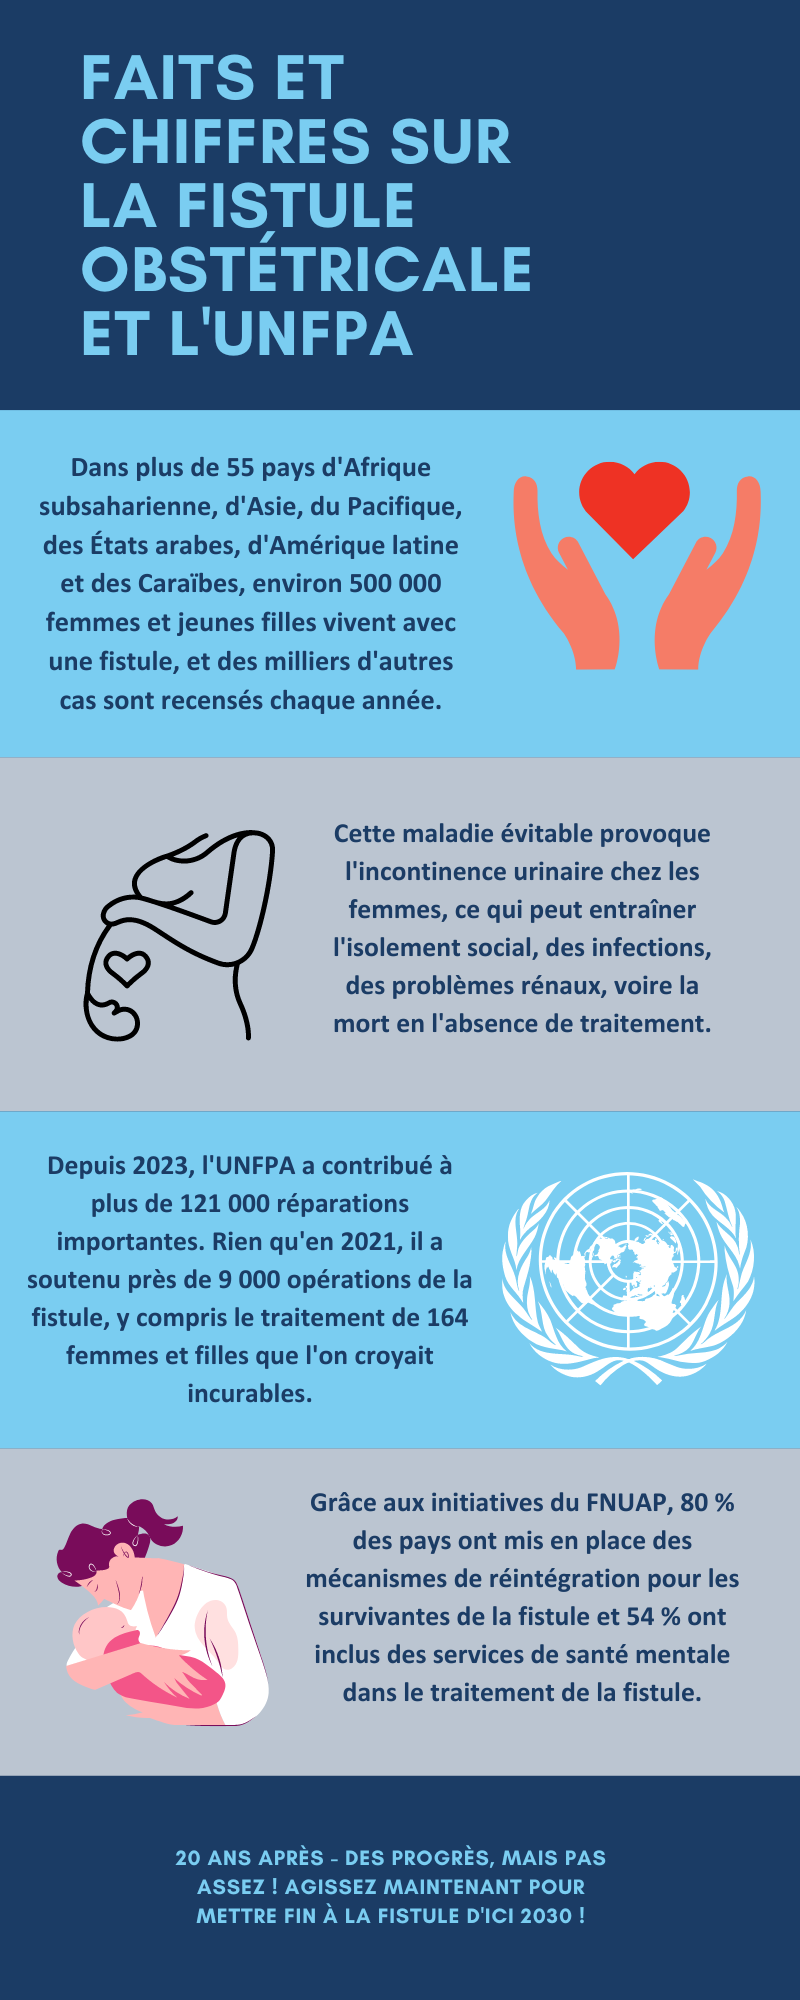 Infographie sur la Journée internationale pour l'elimination de la fistule obstétricale